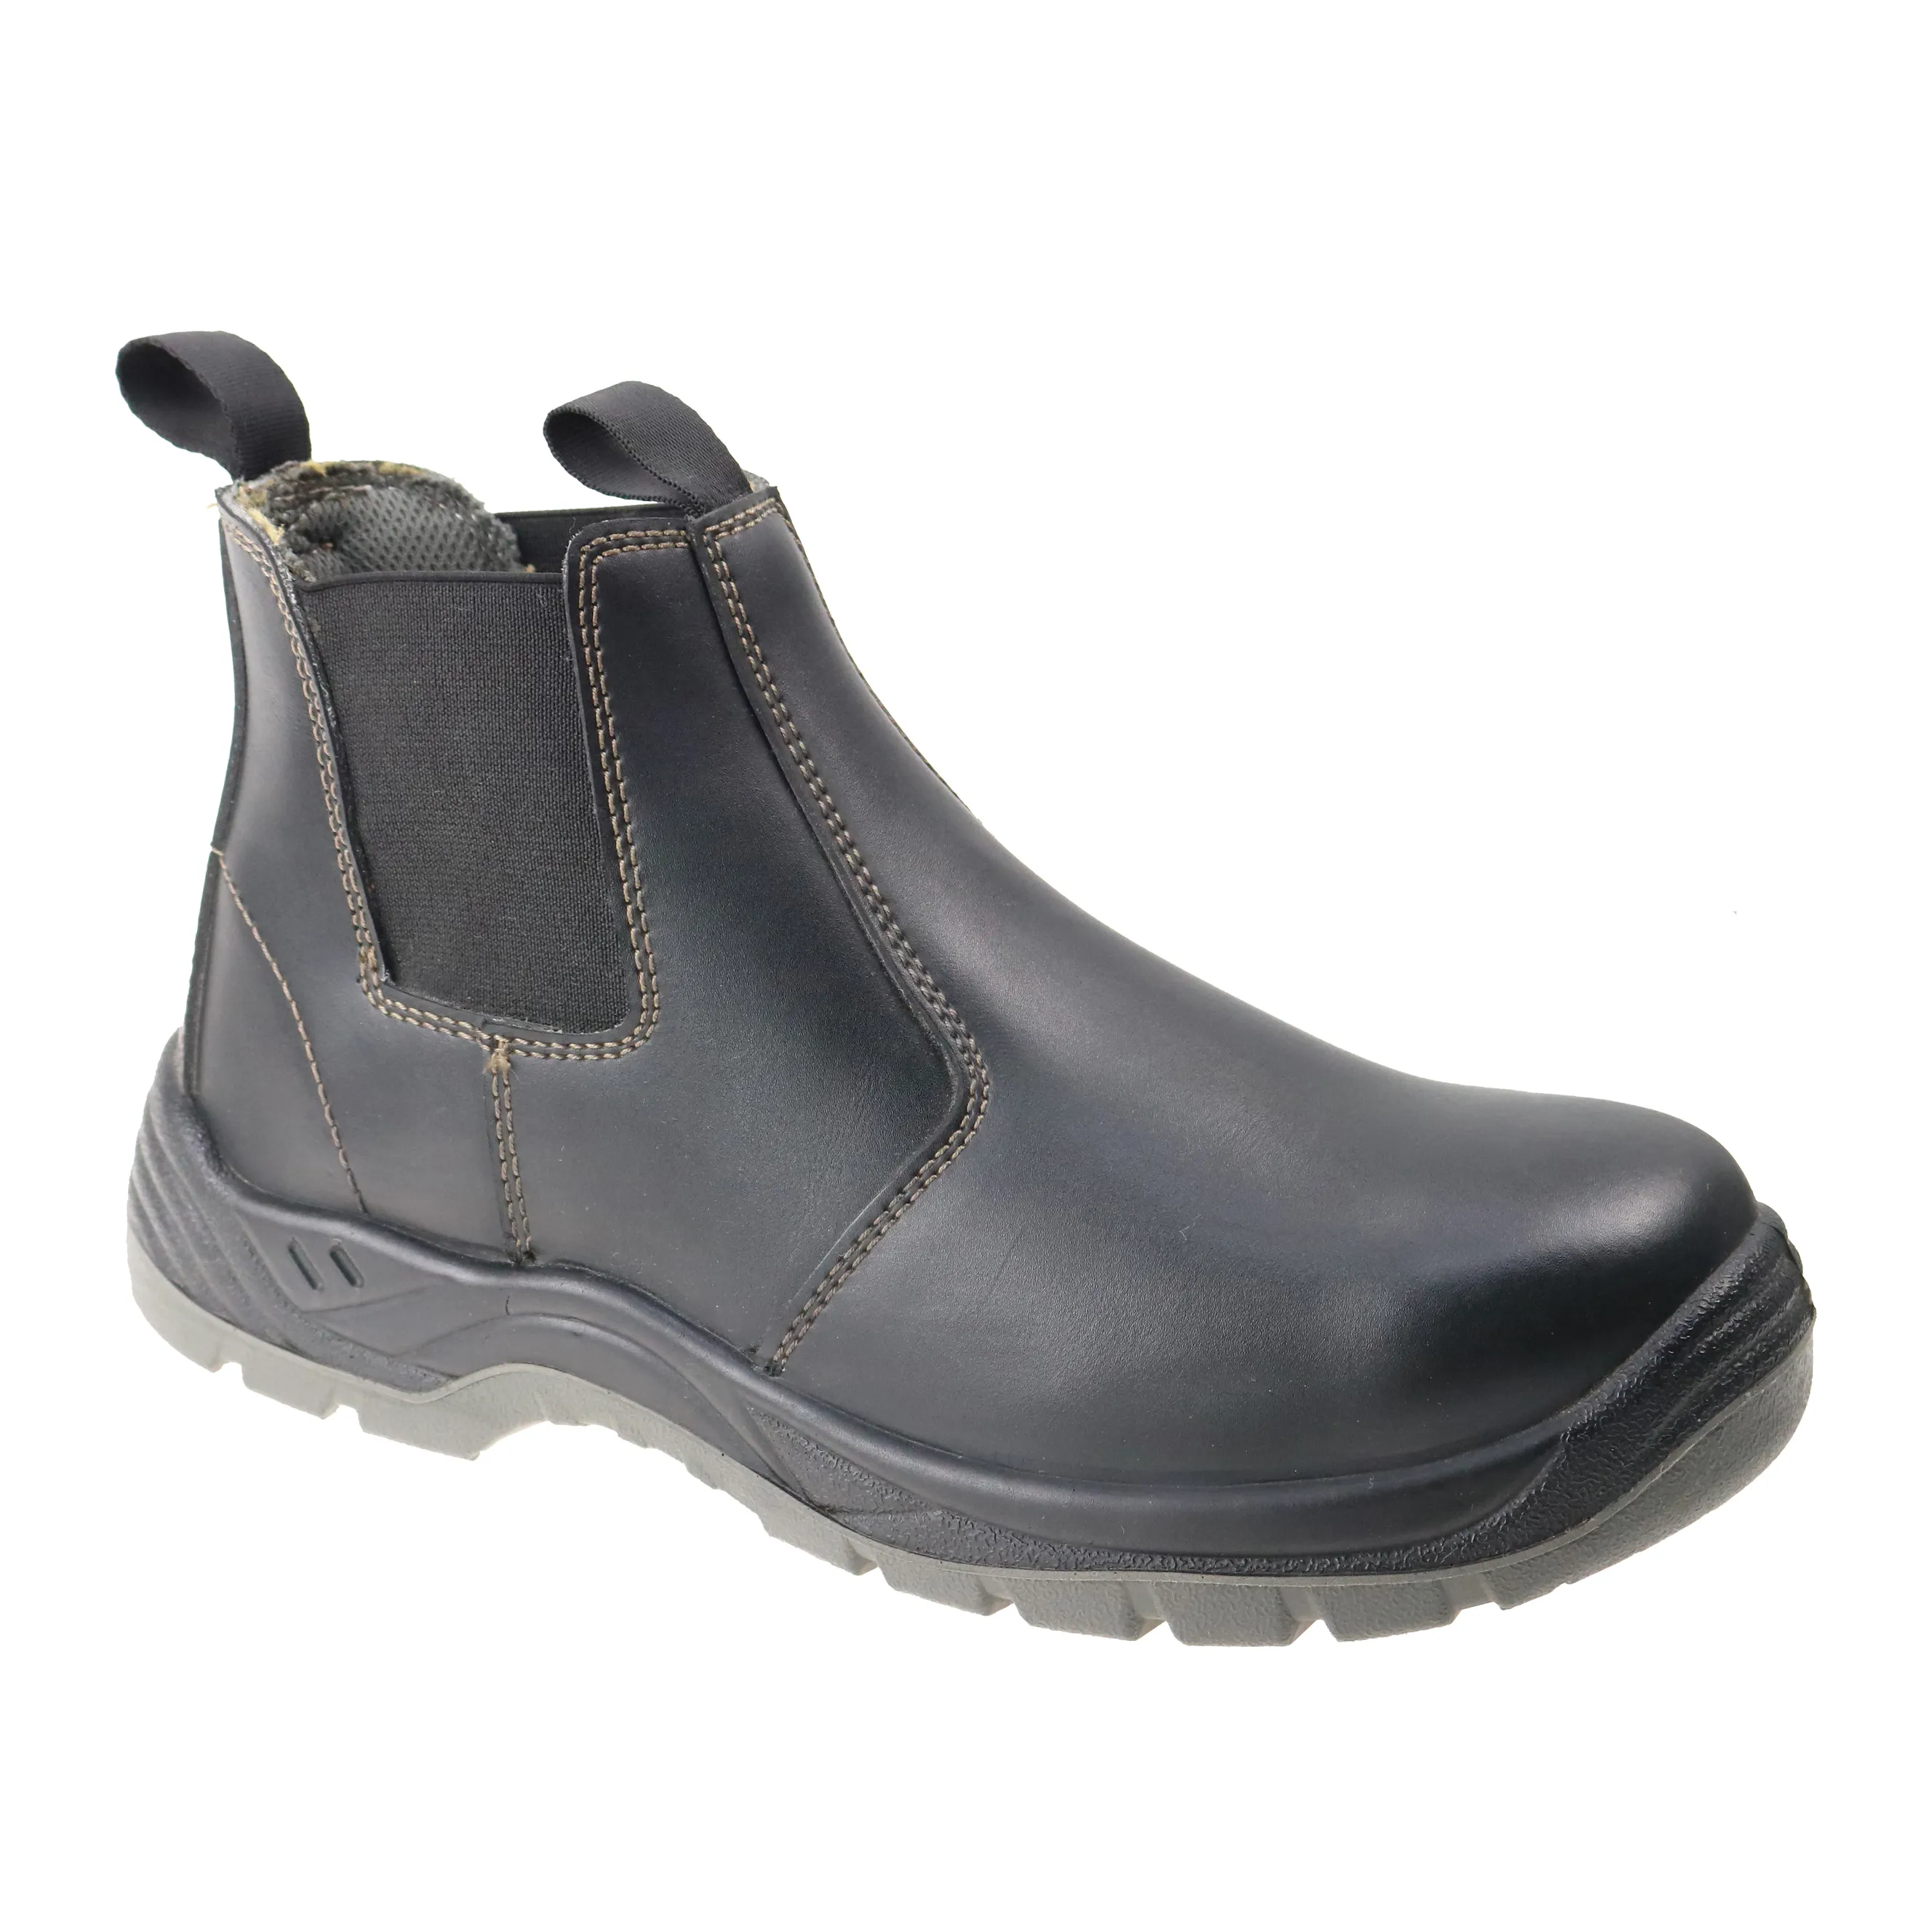 Chaussures de sécurité antidérapantes en cuir de vache, à bas prix, semelle en acier pu, antidérapantes et résistantes à l'huile, bon marché,